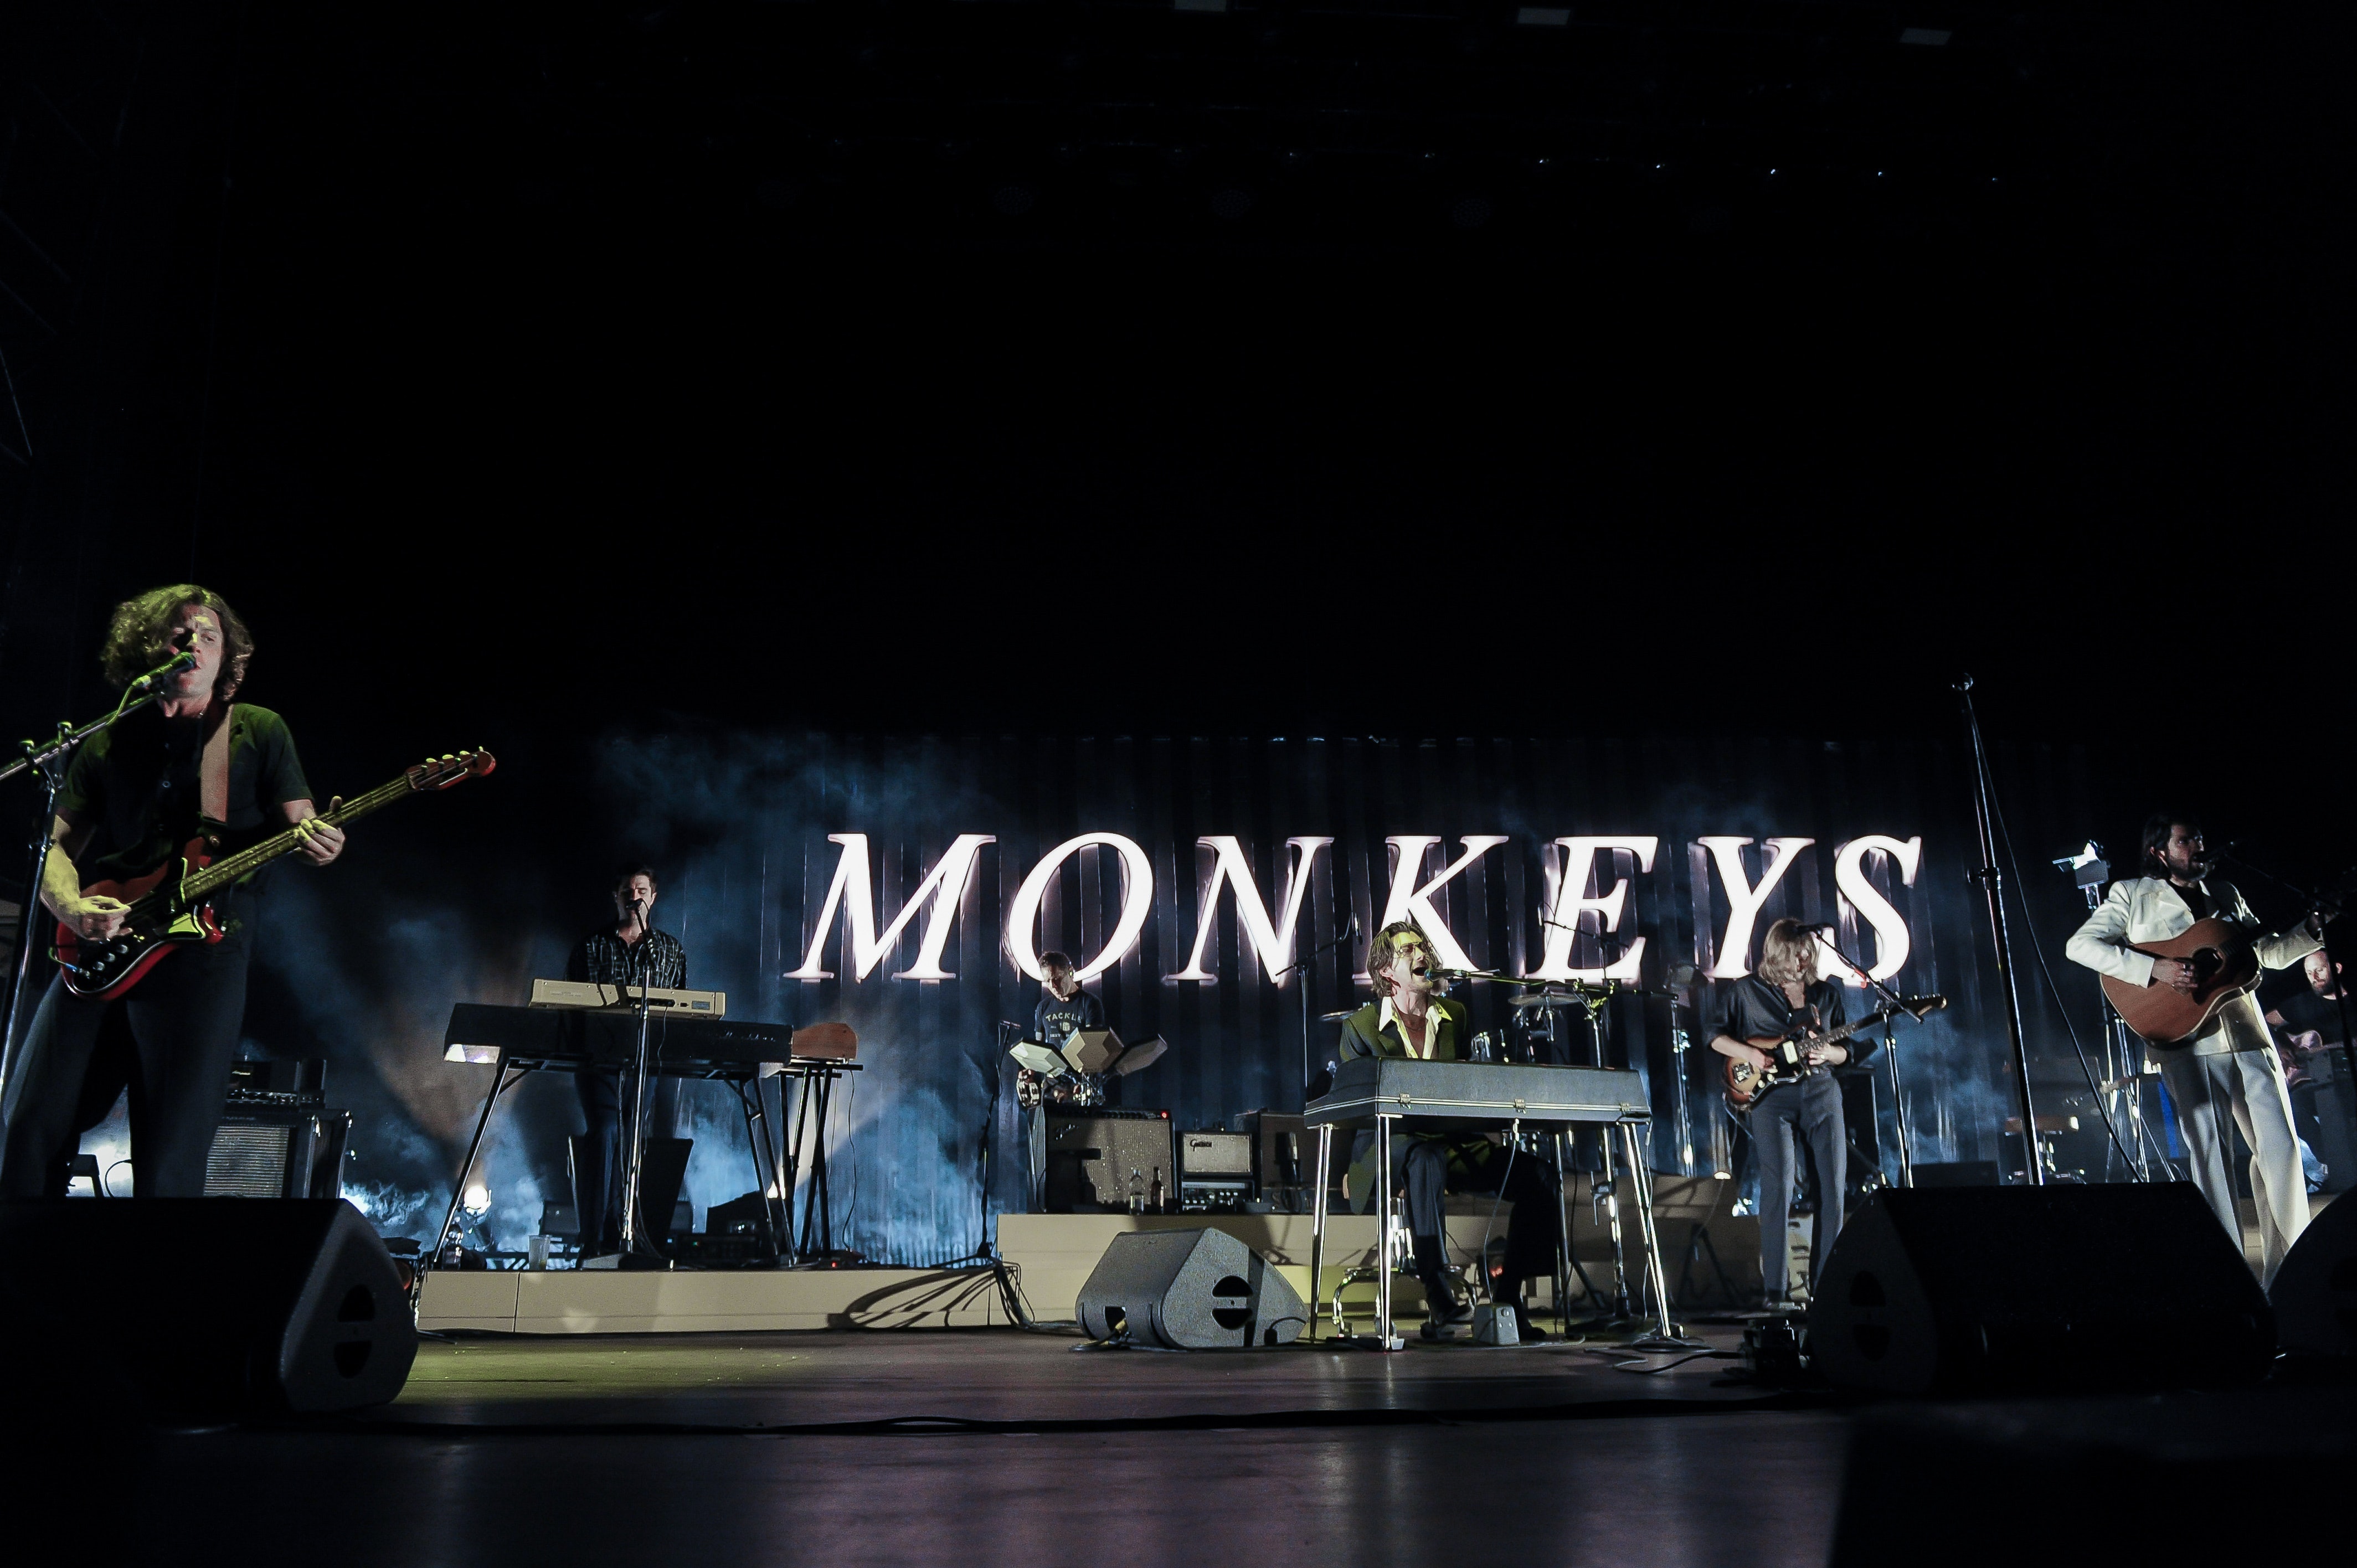 Arctic Monkeys finalmente ha anunciado 2 actuaciones en el Reino Unido para 2022